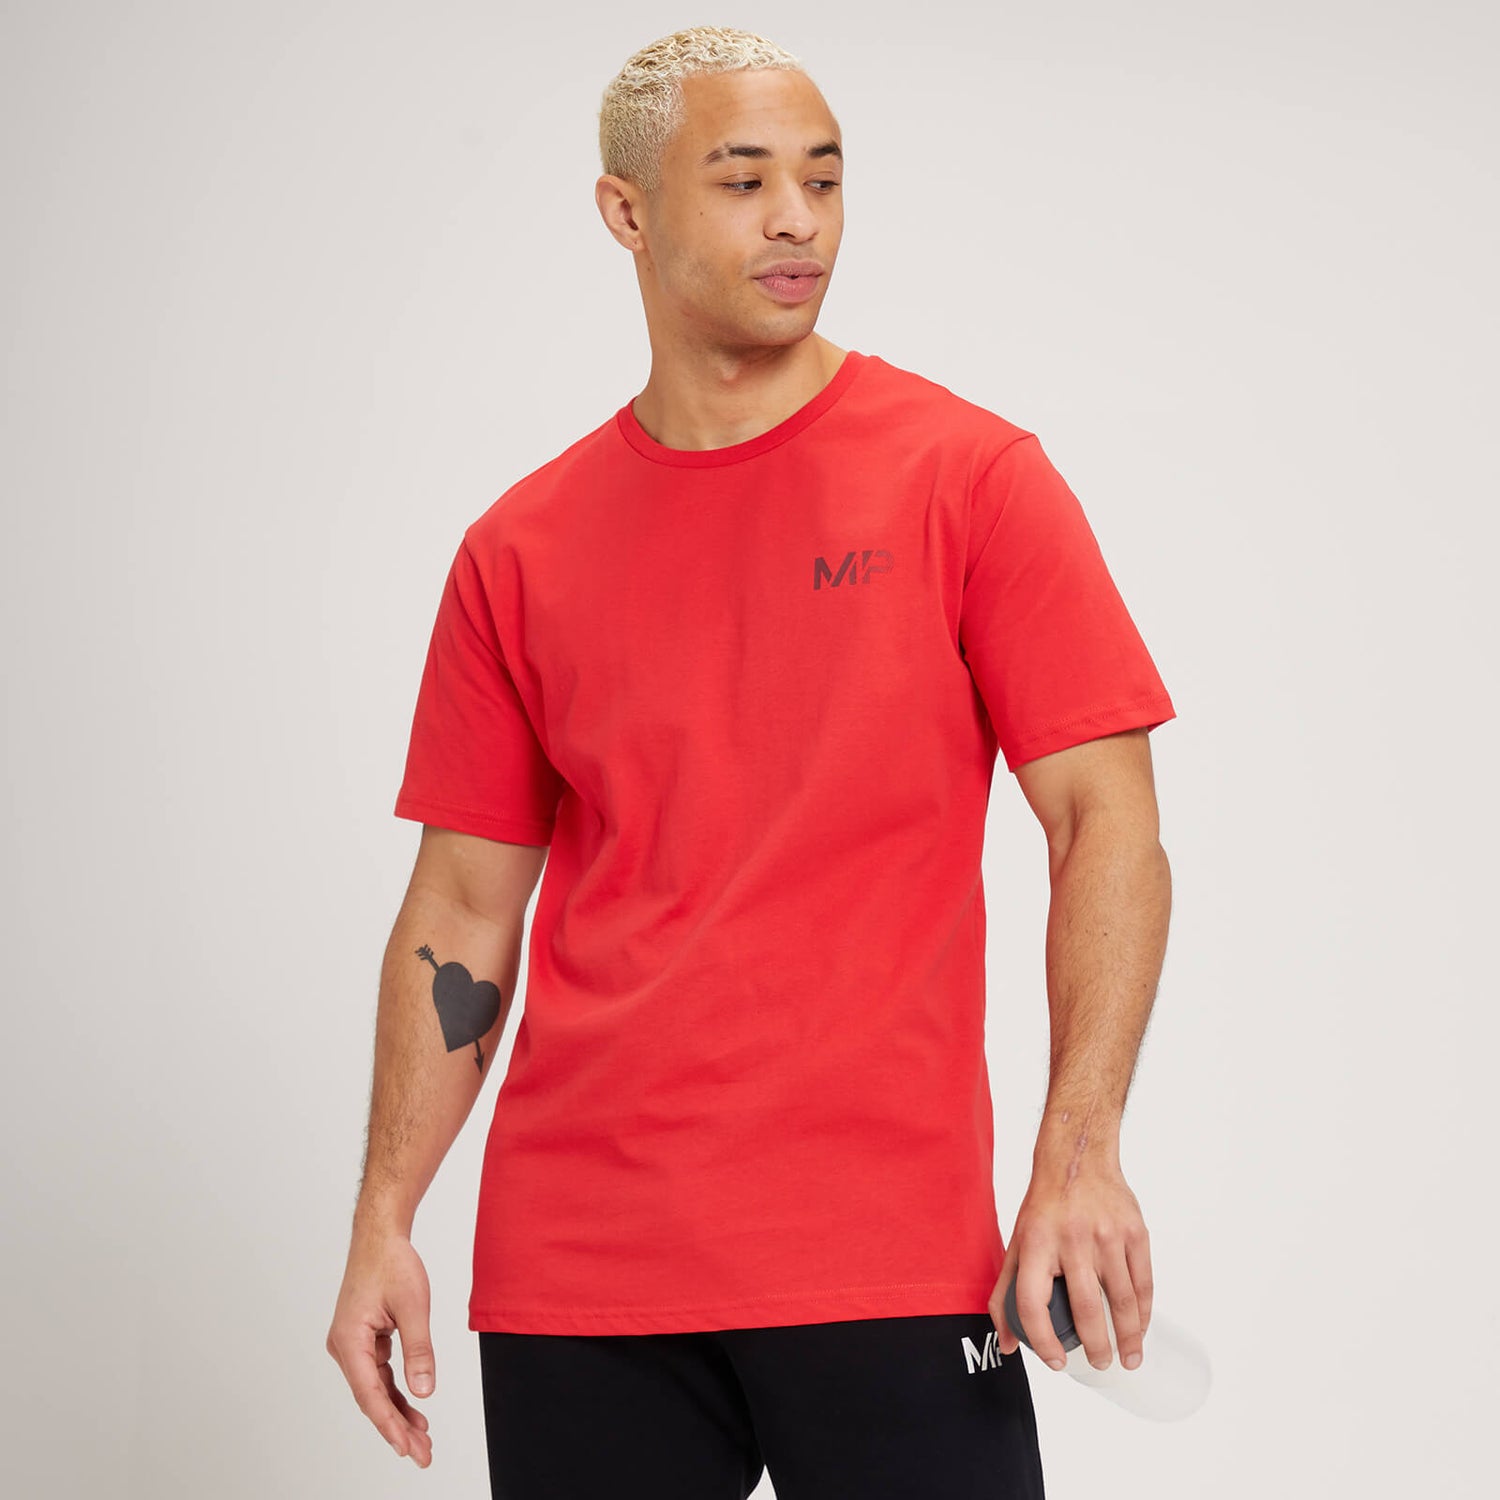 MP Fade Graphic Short Sleeve T-Shirt för män - Röd